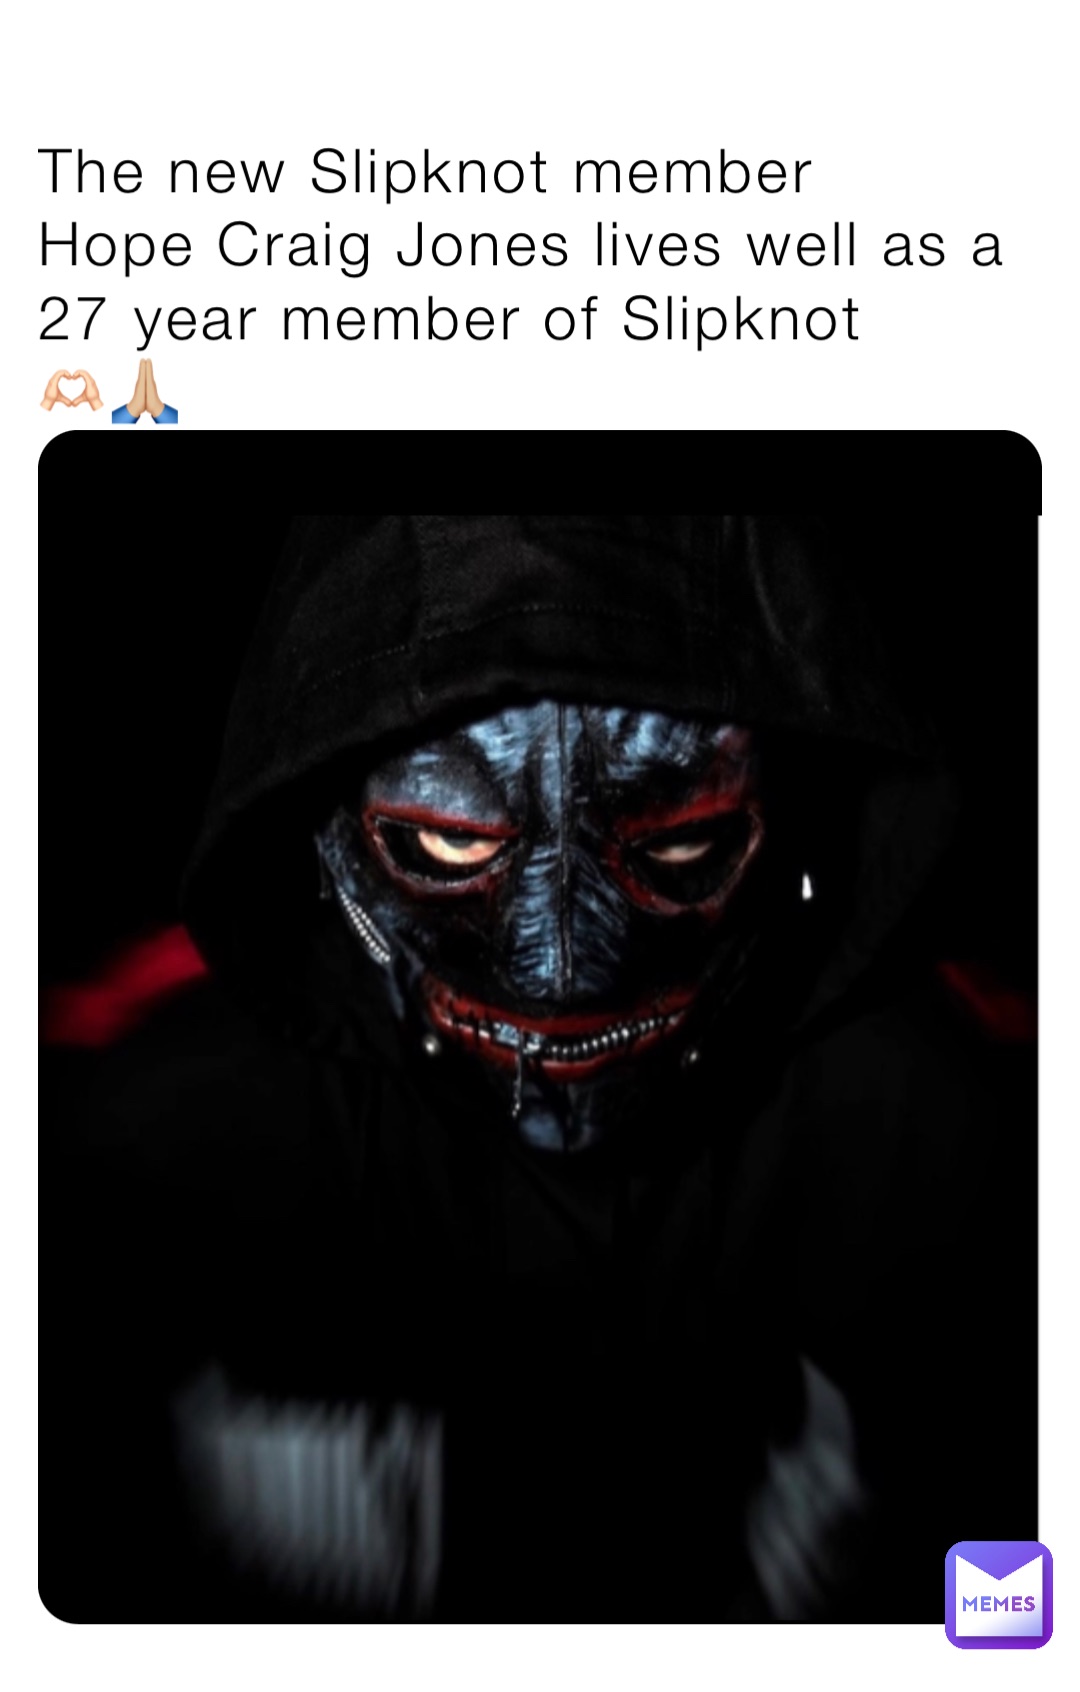 The new Slipknot member
Hope Craig Jones lives well as a 27 year member of Slipknot
🫶🏻🙏🏼